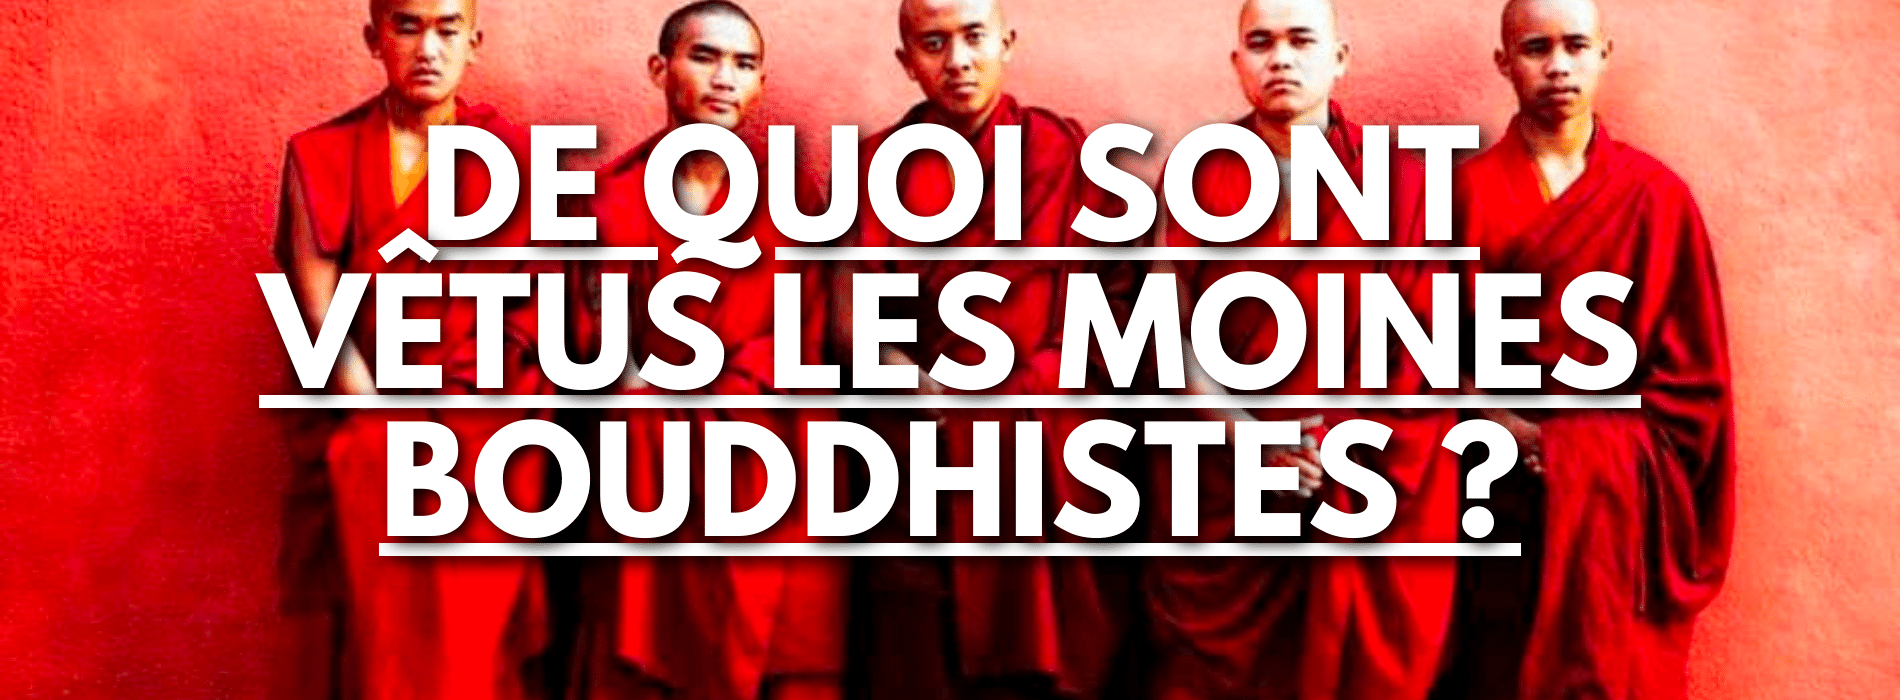 What do Buddhist monks wear?